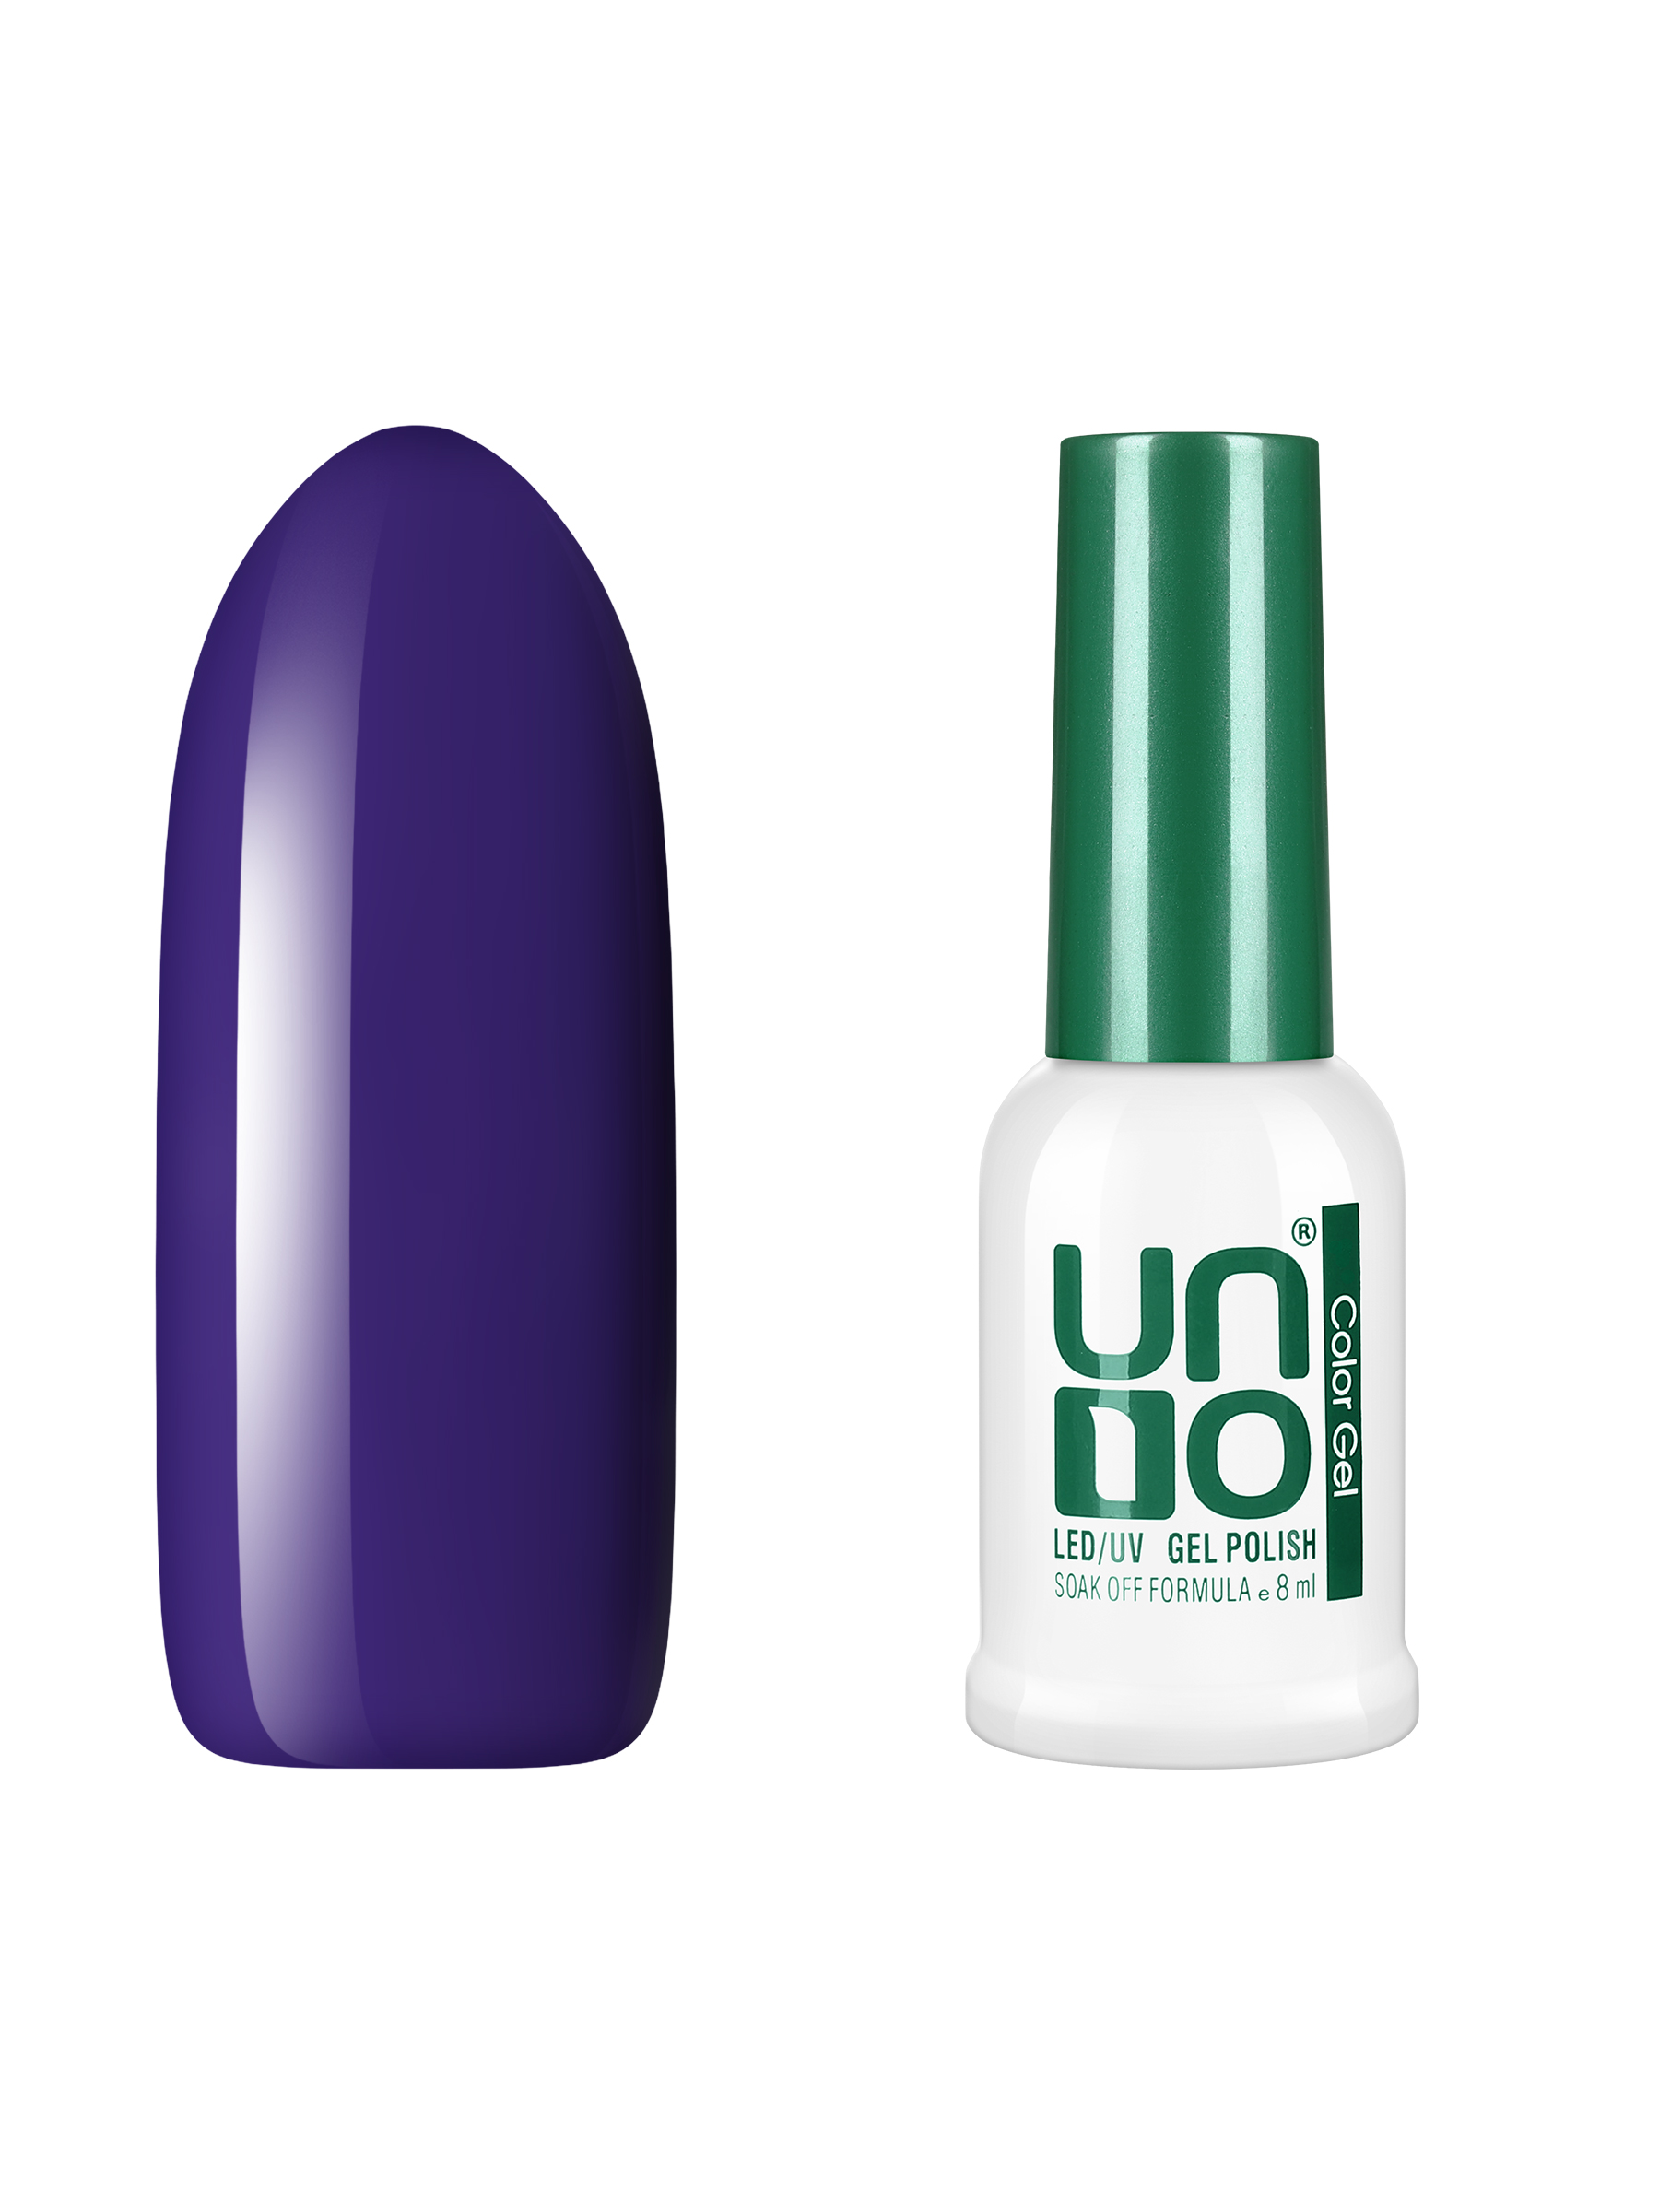 Гель лак для ногтей UNO для маникюра и педикюра, стойкий плотный чернично-фиолетовый, 8 мл дорогие коллеги